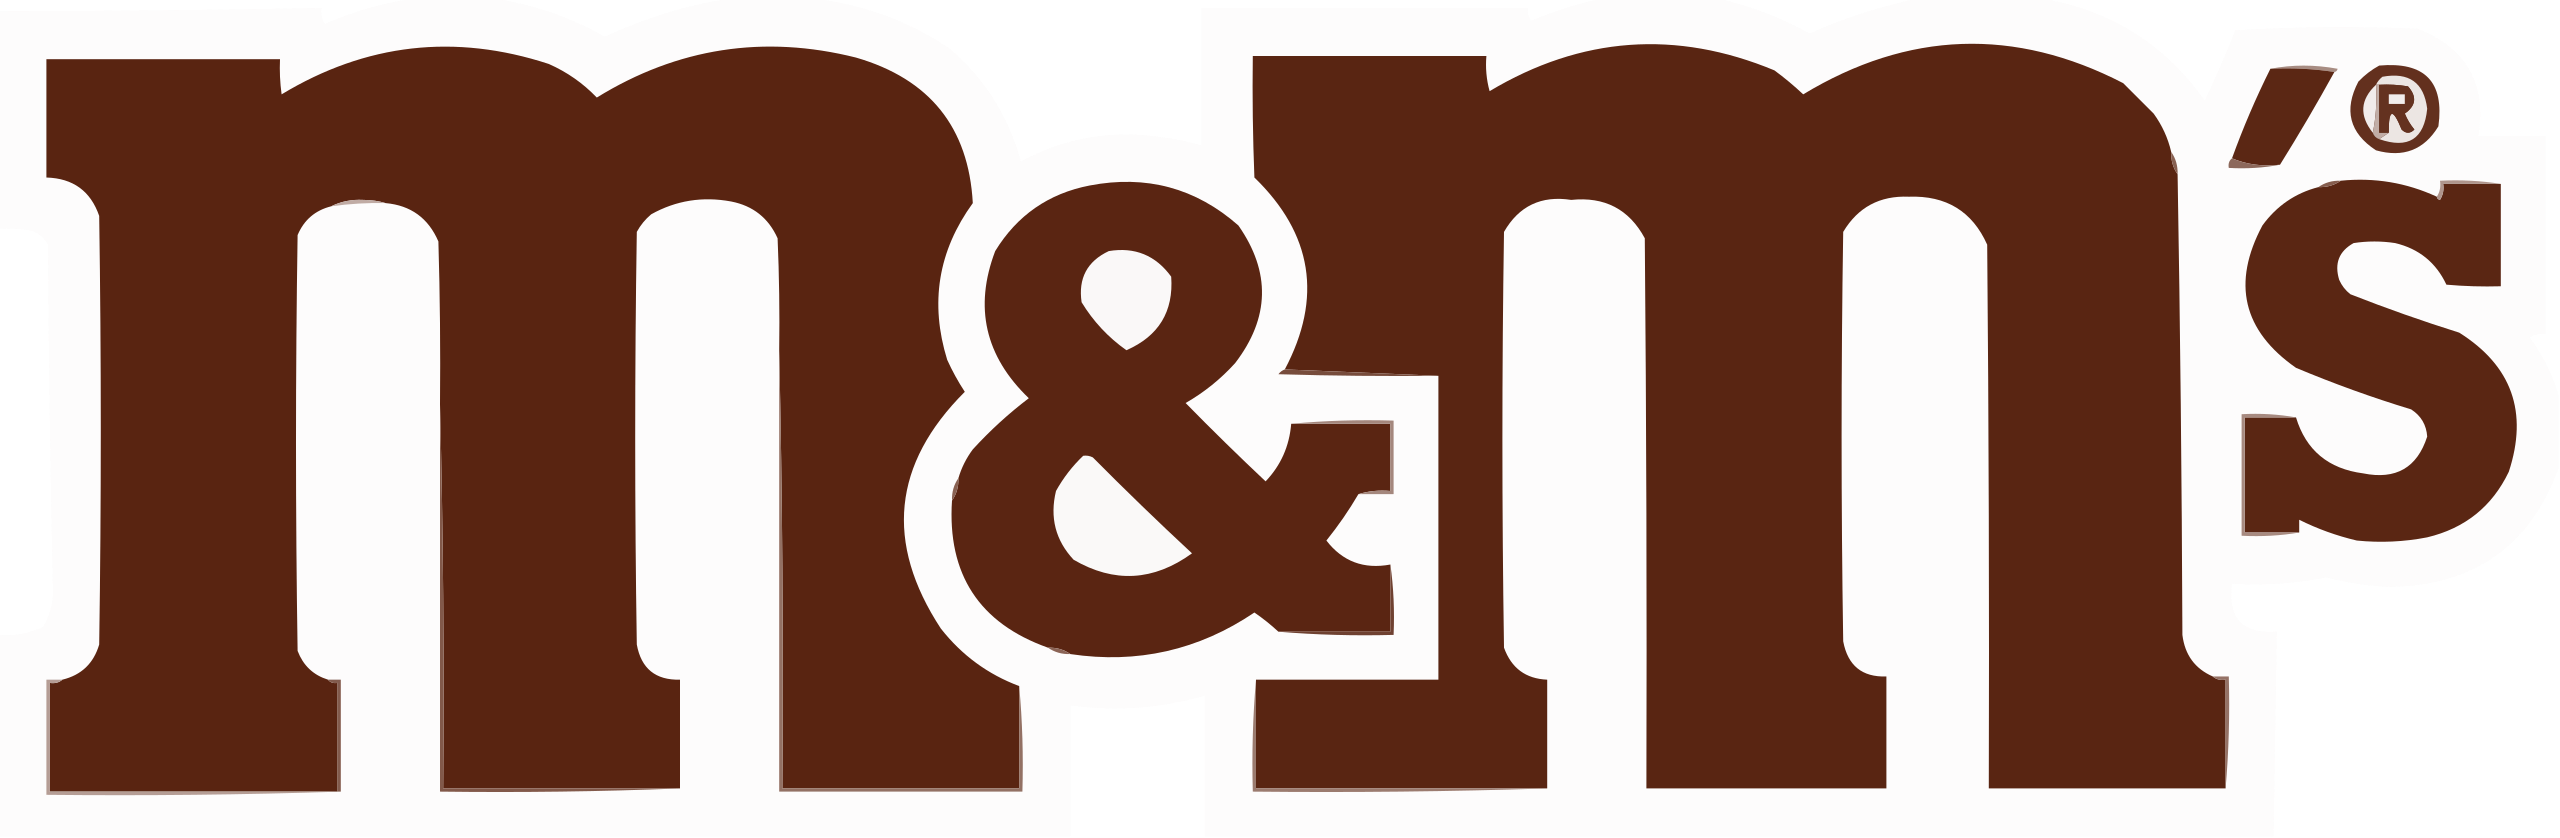 M&M's coupons logo